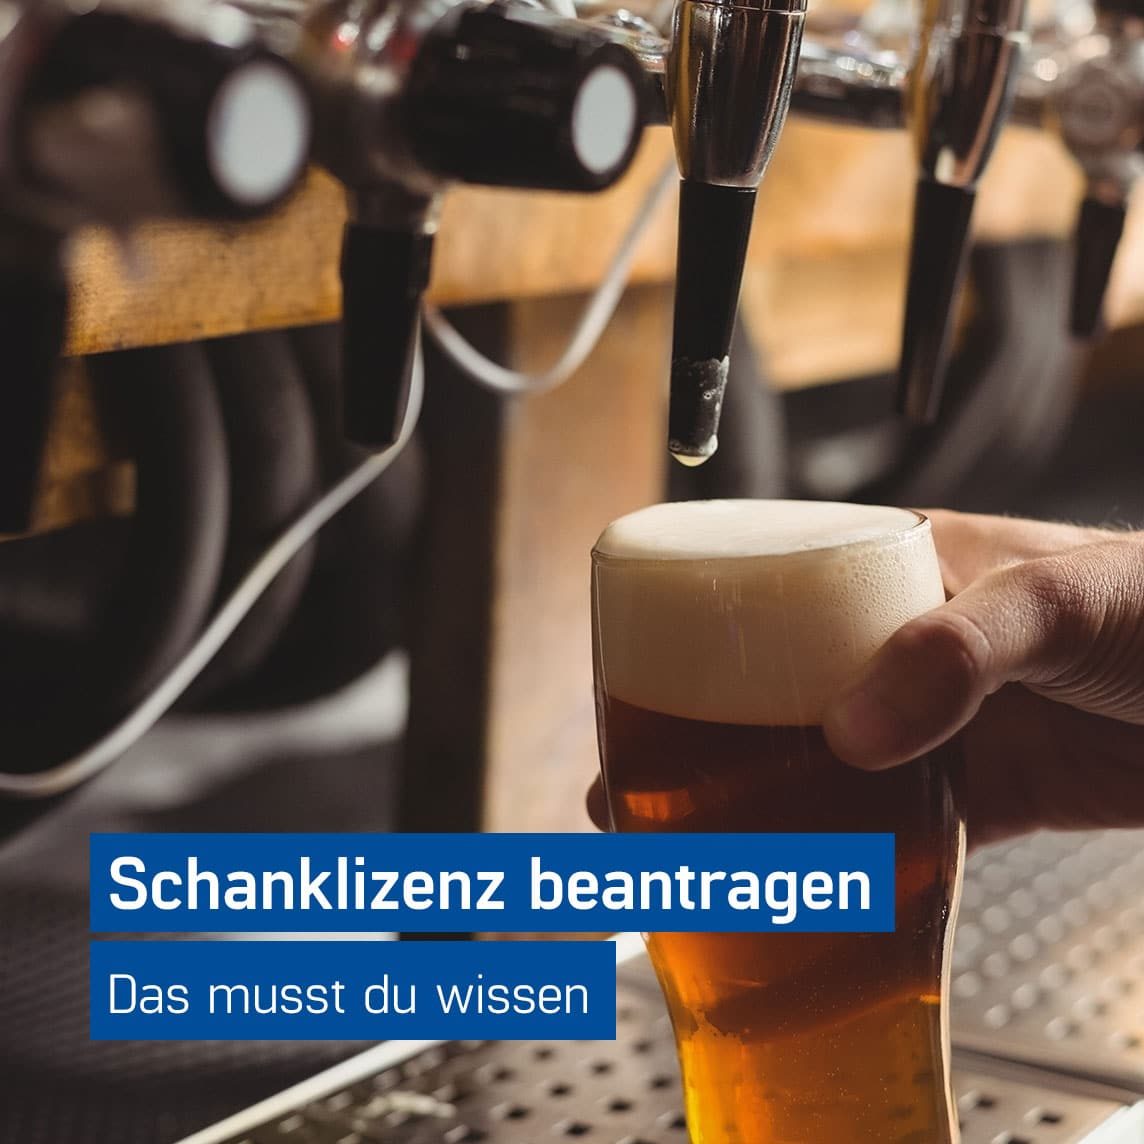 Barkeeper füllt ein Glas Bier an einer Schankanlage, Schanklizenz beantragen mit dem Guide von GastroSoft